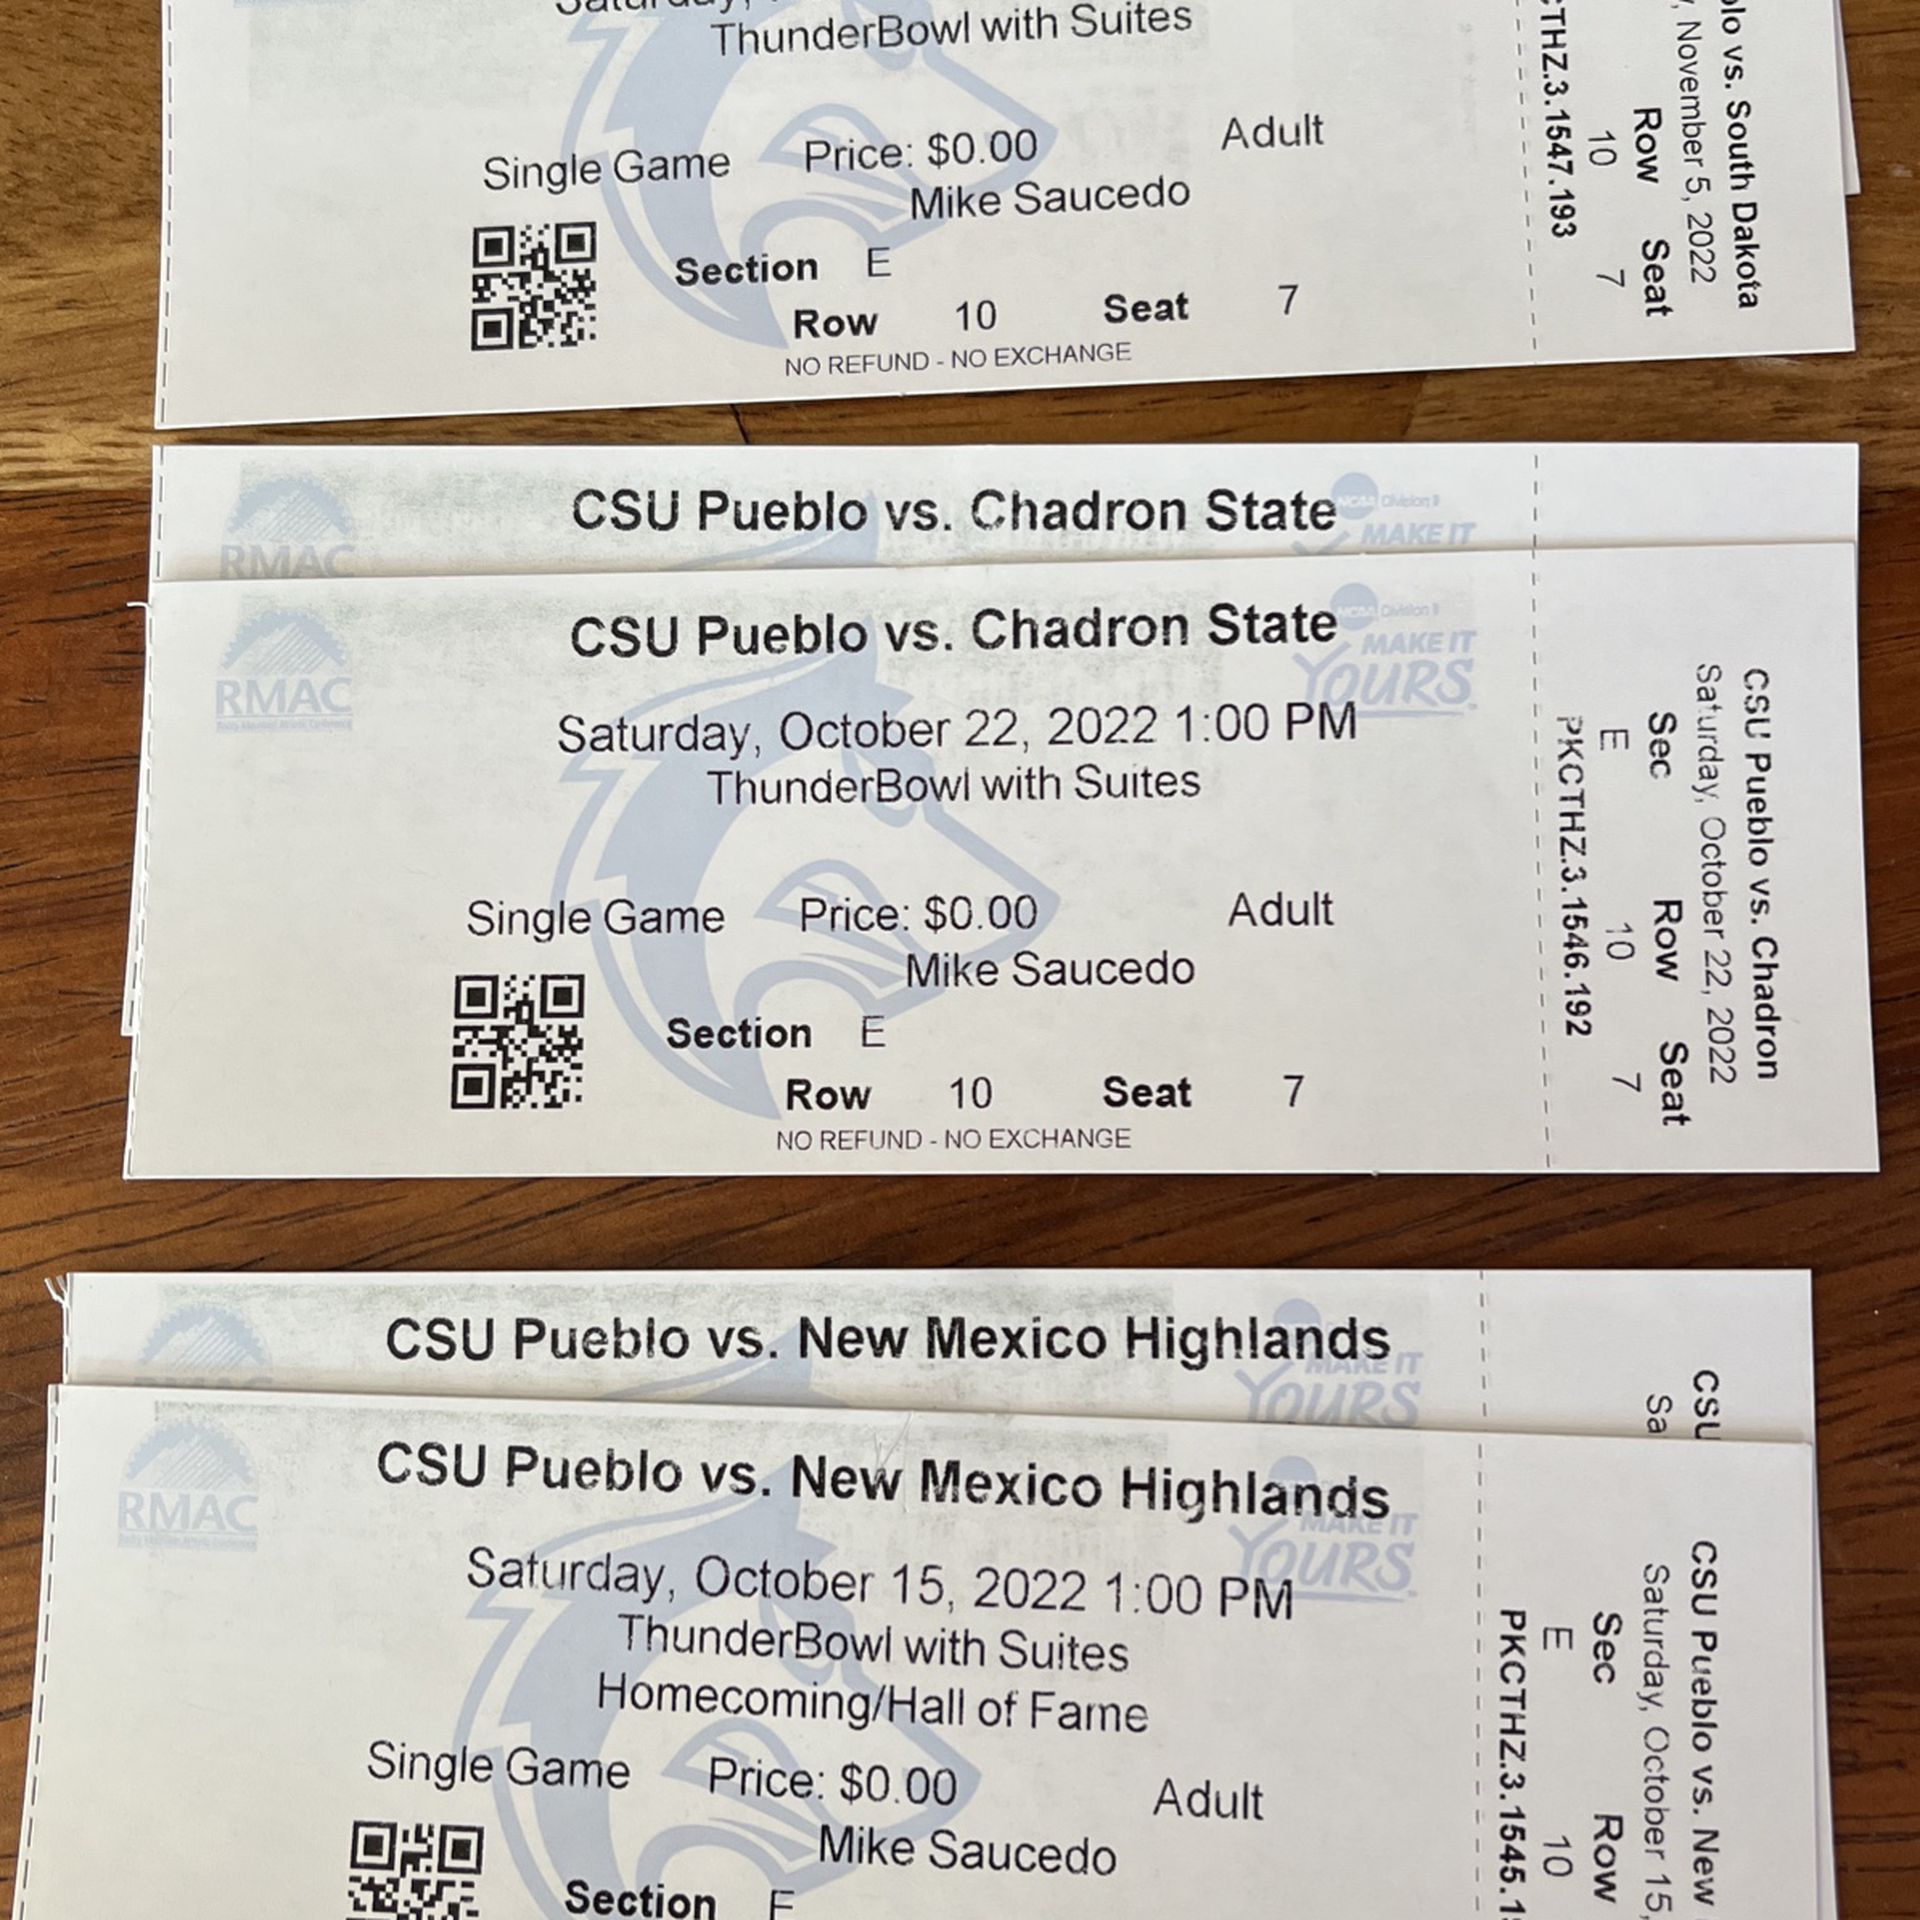 CSU Pueblo Foot Season Tickets - Great Seats. Section E, Row 10, Seats 7 & 8.